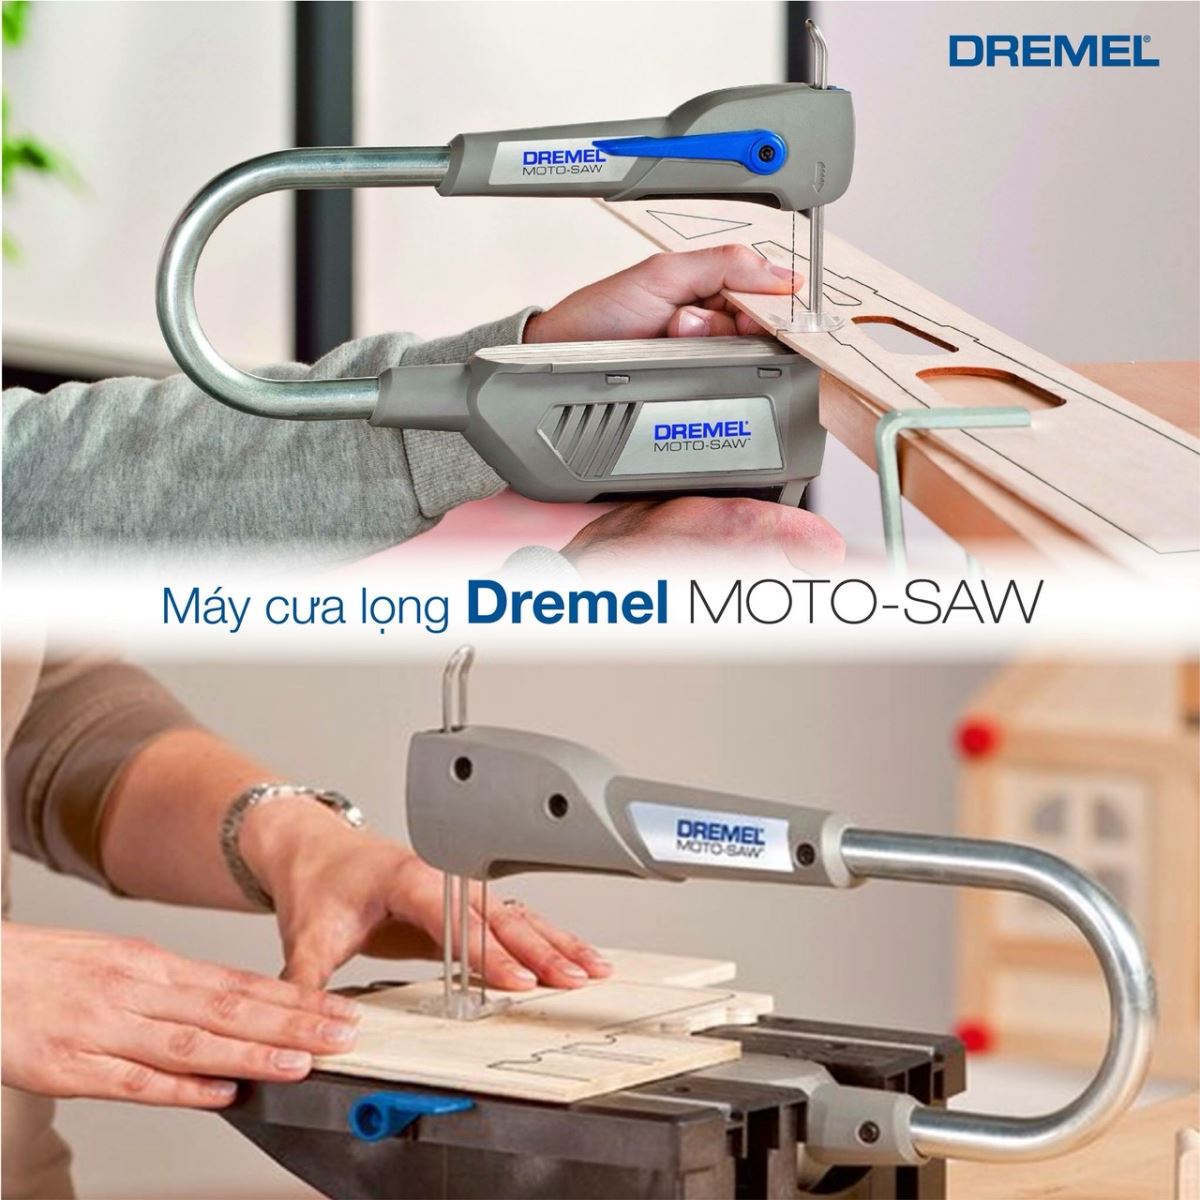 Trải nghiệm bộ dụng cụ cưa đa năng Dremel Moto-Saw F013MS20NC